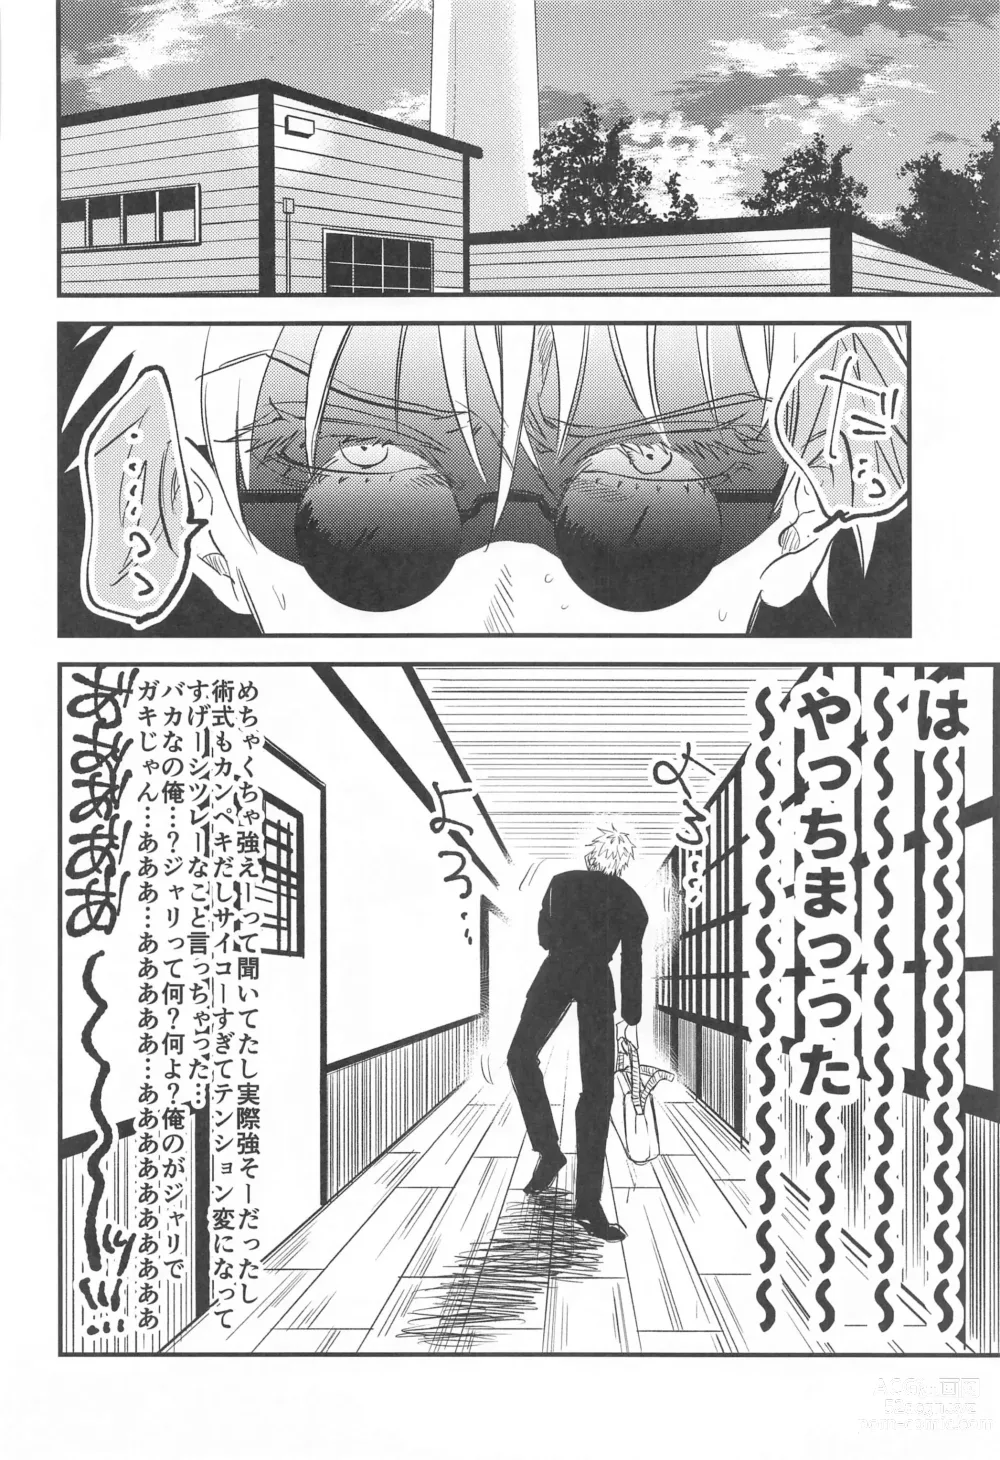 Page 7 of doujinshi Saikyou  x Kimeseku  x Sokuochi 2-koma